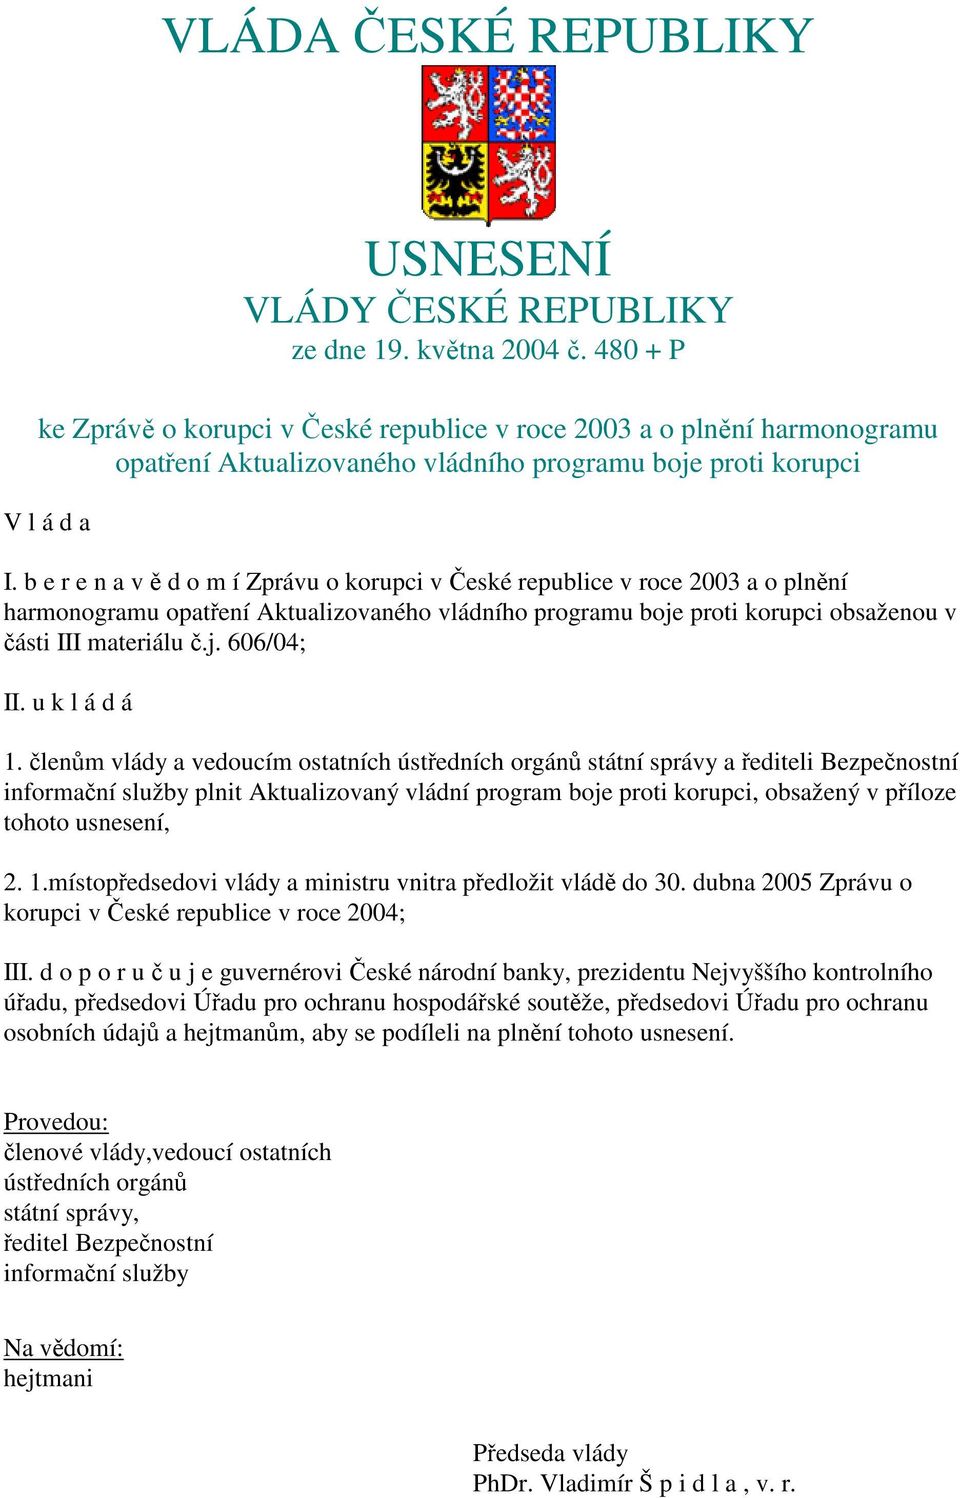 b e r e n a v ě d o m í Zprávu o korupci v České republice v roce 2003 a o plnění harmonogramu opatření Aktualizovaného vládního programu boje proti korupci obsaženou v části III materiálu č.j. 606/04; II.